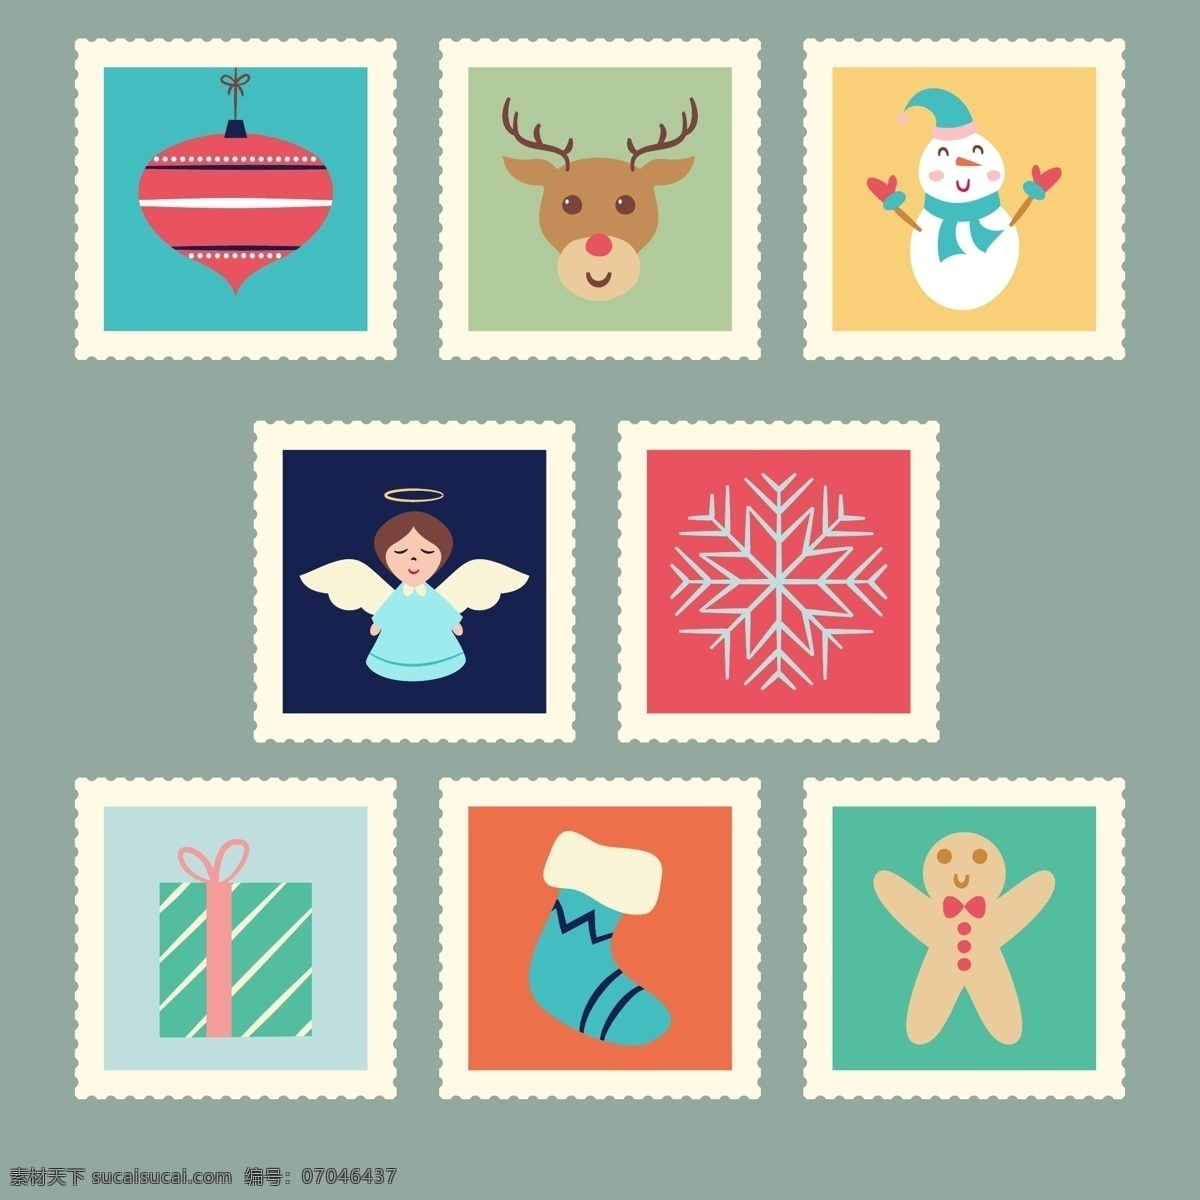 卡通 图案 圣诞 邮票 标签 雪花 礼物 圣诞节 矢量素材 彩色 驯鹿 天使 雪人 圣诞袜 姜饼人